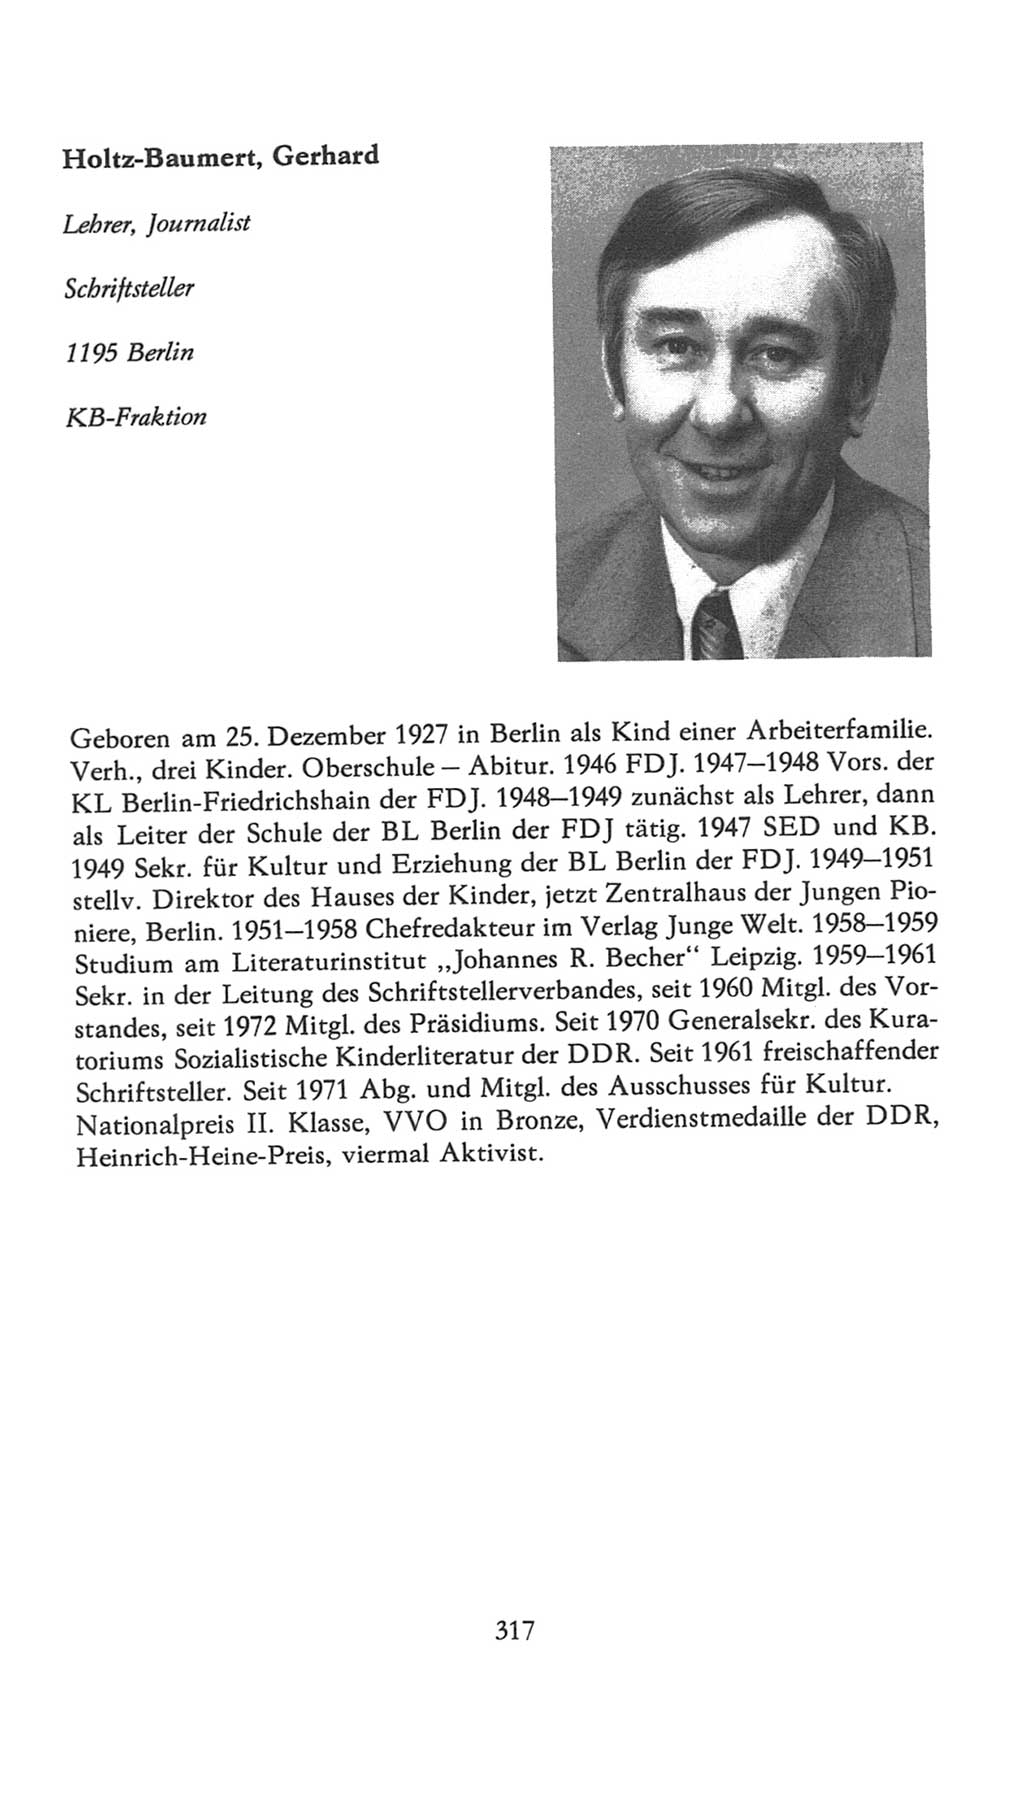 Volkskammer (VK) der Deutschen Demokratischen Republik (DDR), 7. Wahlperiode 1976-1981, Seite 317 (VK. DDR 7. WP. 1976-1981, S. 317)